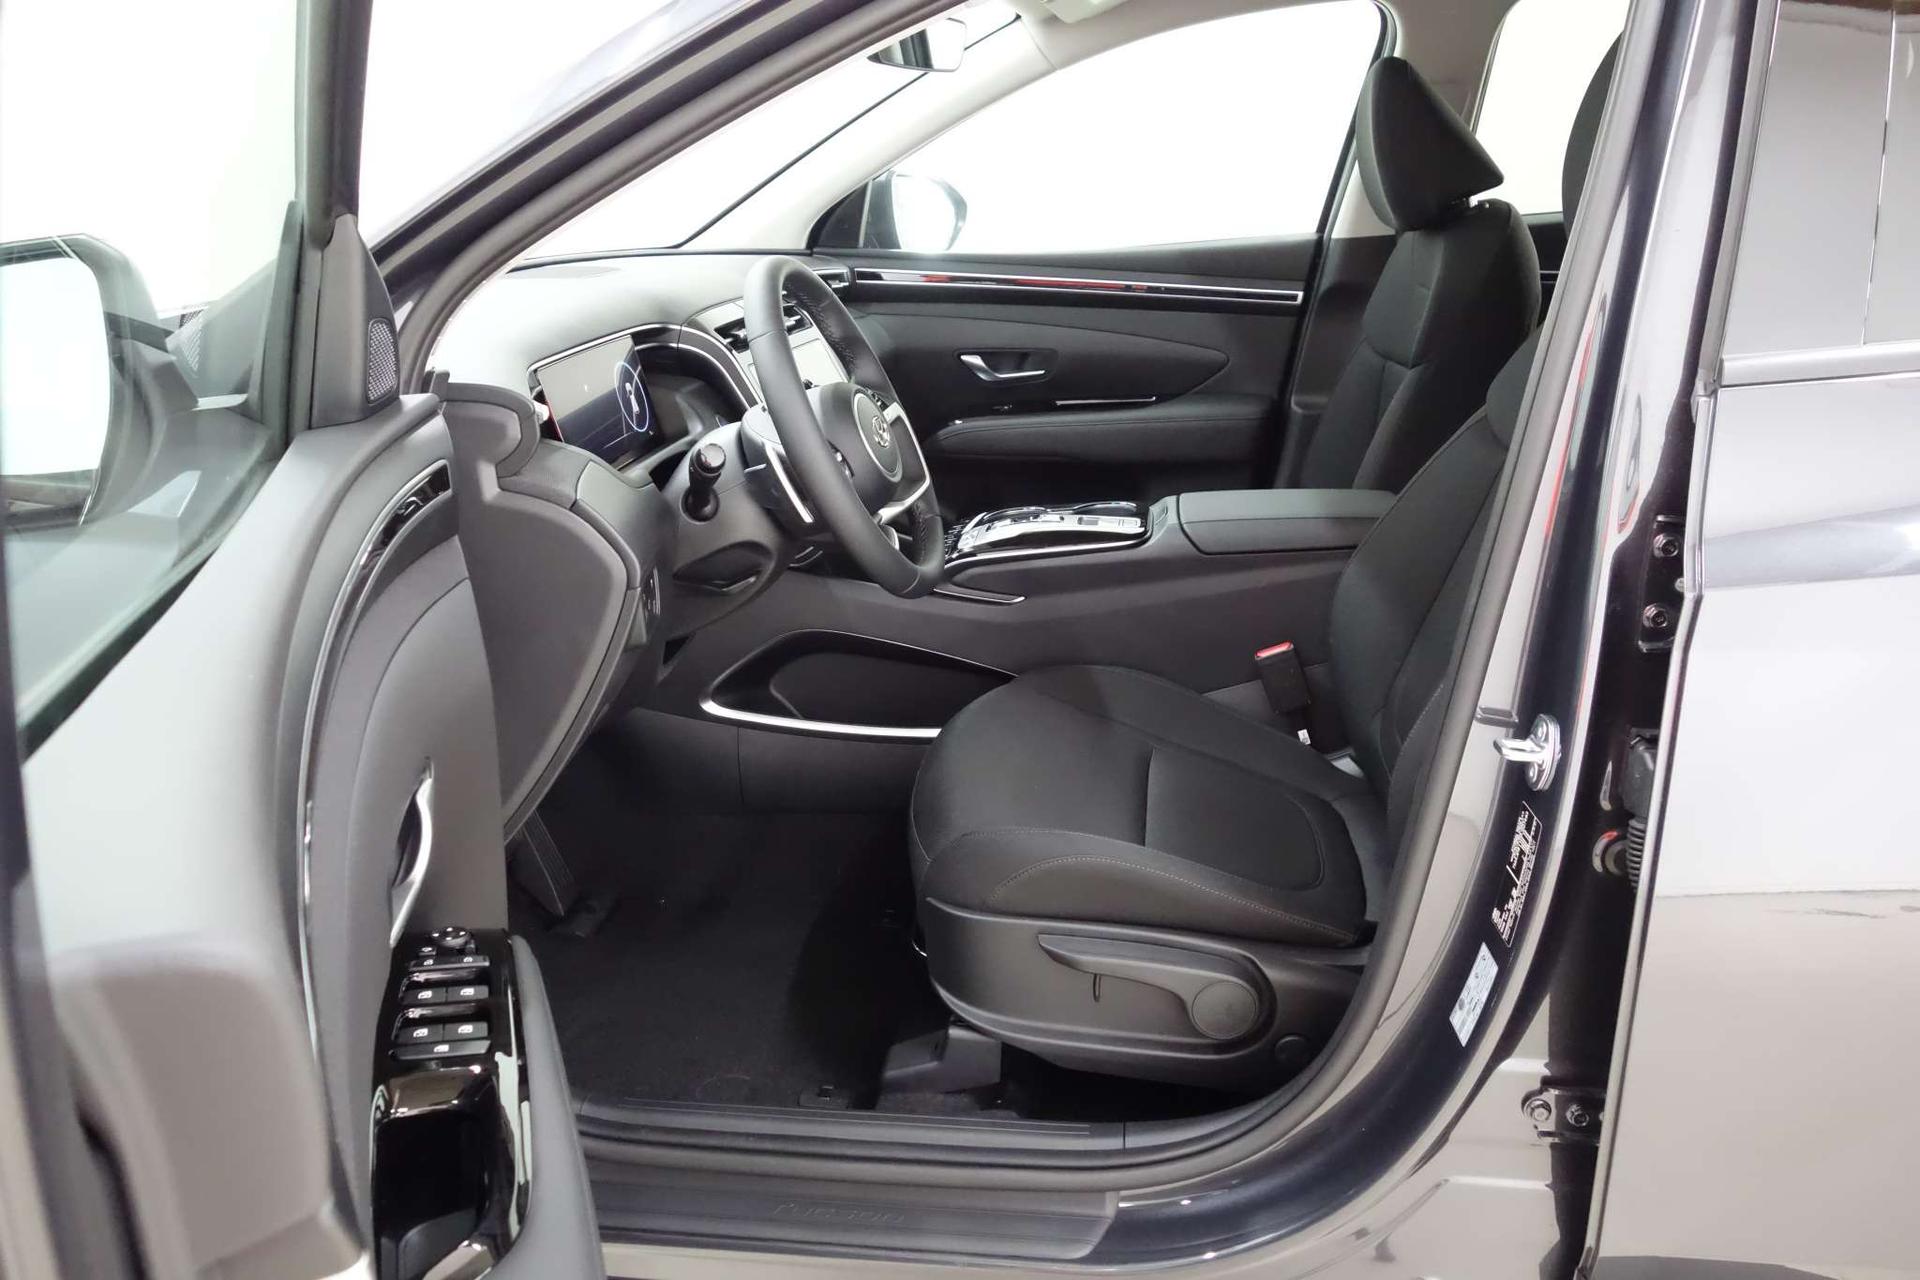 Hyundai TUCSON Trend Line 1.6 T-GDi 2WD 110kW 48V, Smart Sense+ Paket,  Winter-Paket, Klimaautomatik, 10,25 Navigationssystem, Parksensoren vorne  und hinten, LED Licht, Kurvenlicht, 17 Zoll Leichtmetallfelgen, uvm.  Reimport EU-Neuwagen günstig kaufen